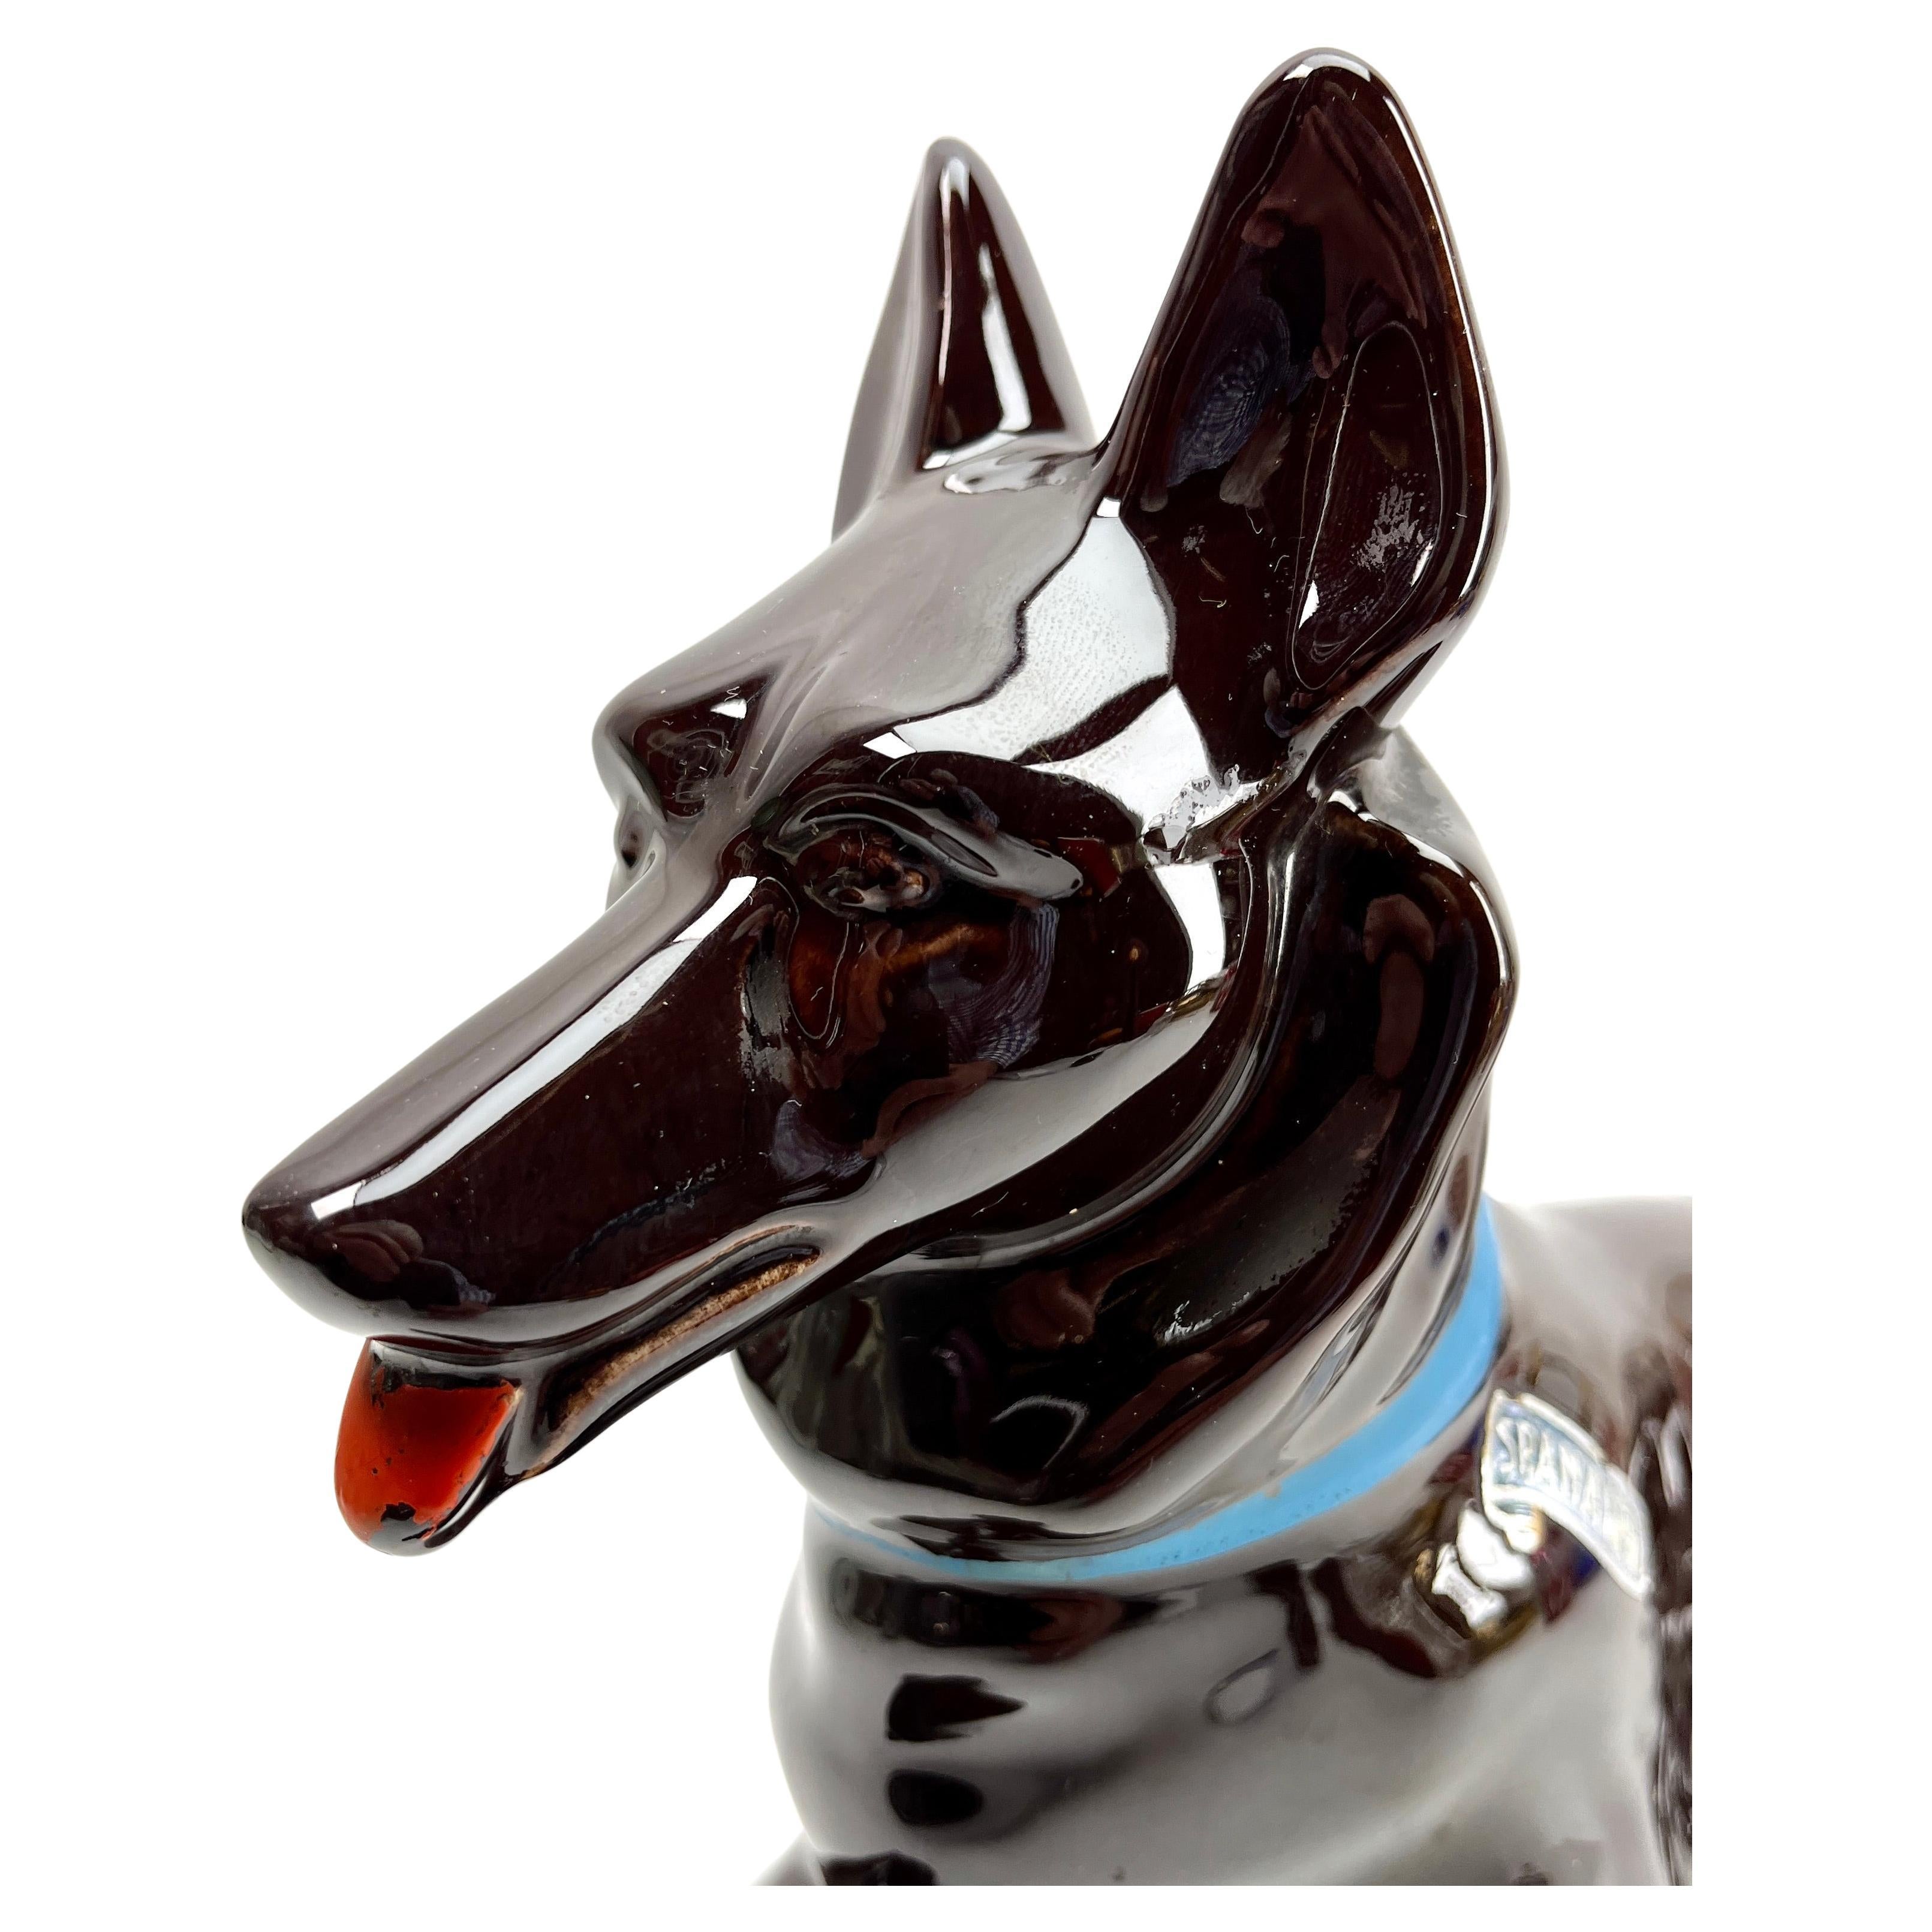 Diese stilvolle Hundeskulptur stammt aus den späten 1950er bis 1960er Jahren und wurde in Italien hergestellt.
Das Stück ist in ausgezeichnetem Zustand und eine echte Schönheit!

Weitere Jugendstil-, Art-déco- und Vintage-Stücke erhältlich:

Mit